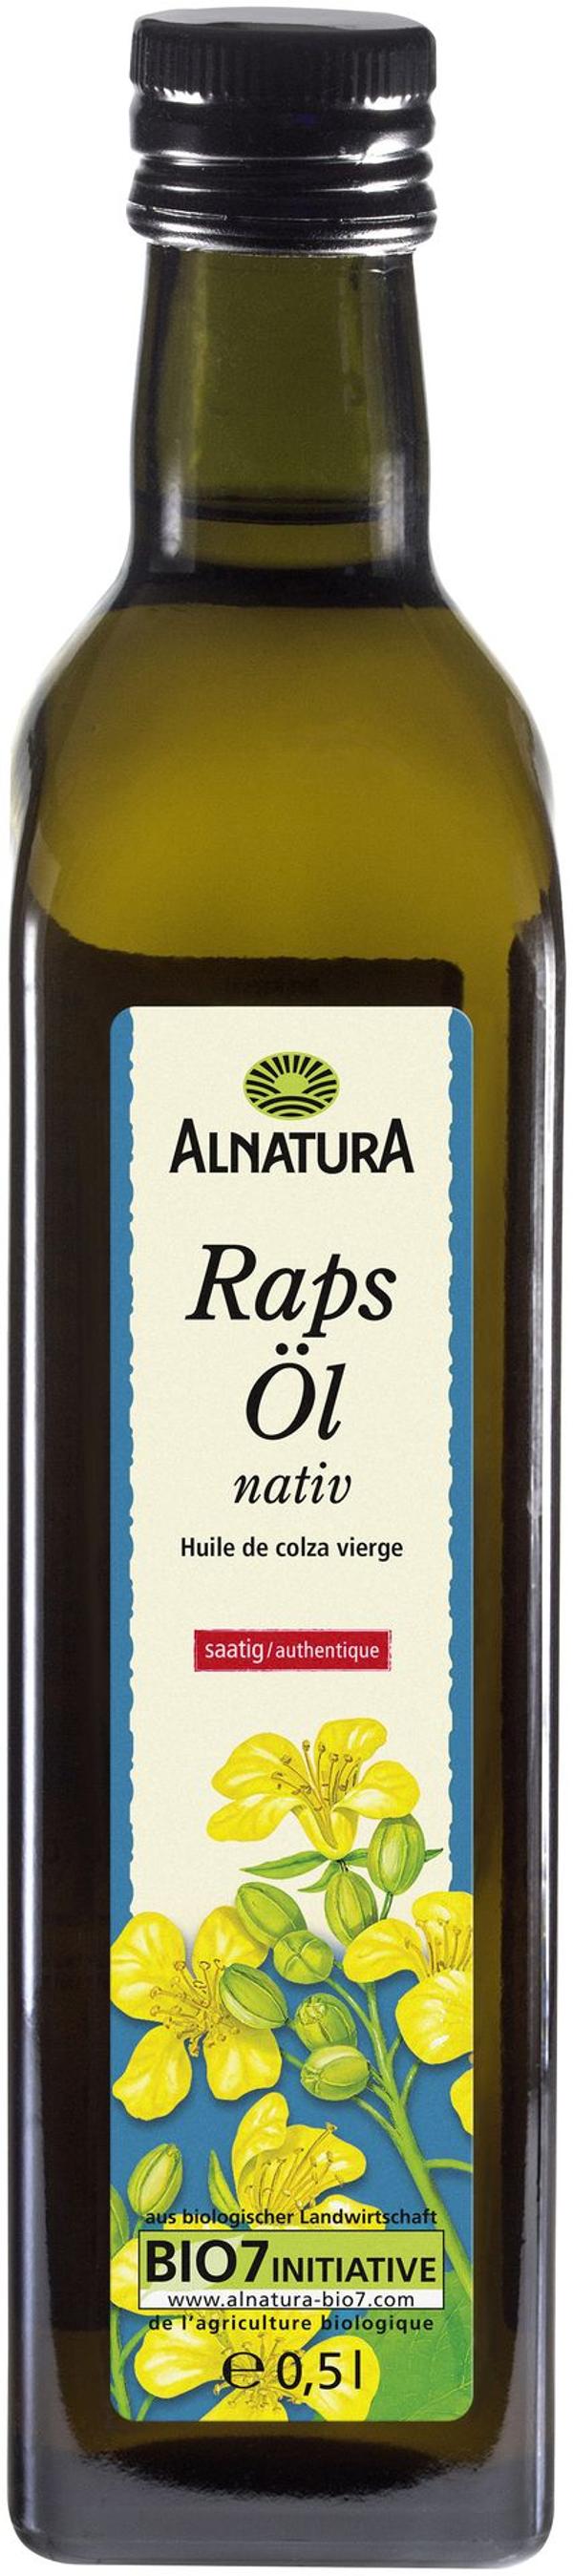 Produktfoto zu Rapsöl nativ 500 ml Alnatura